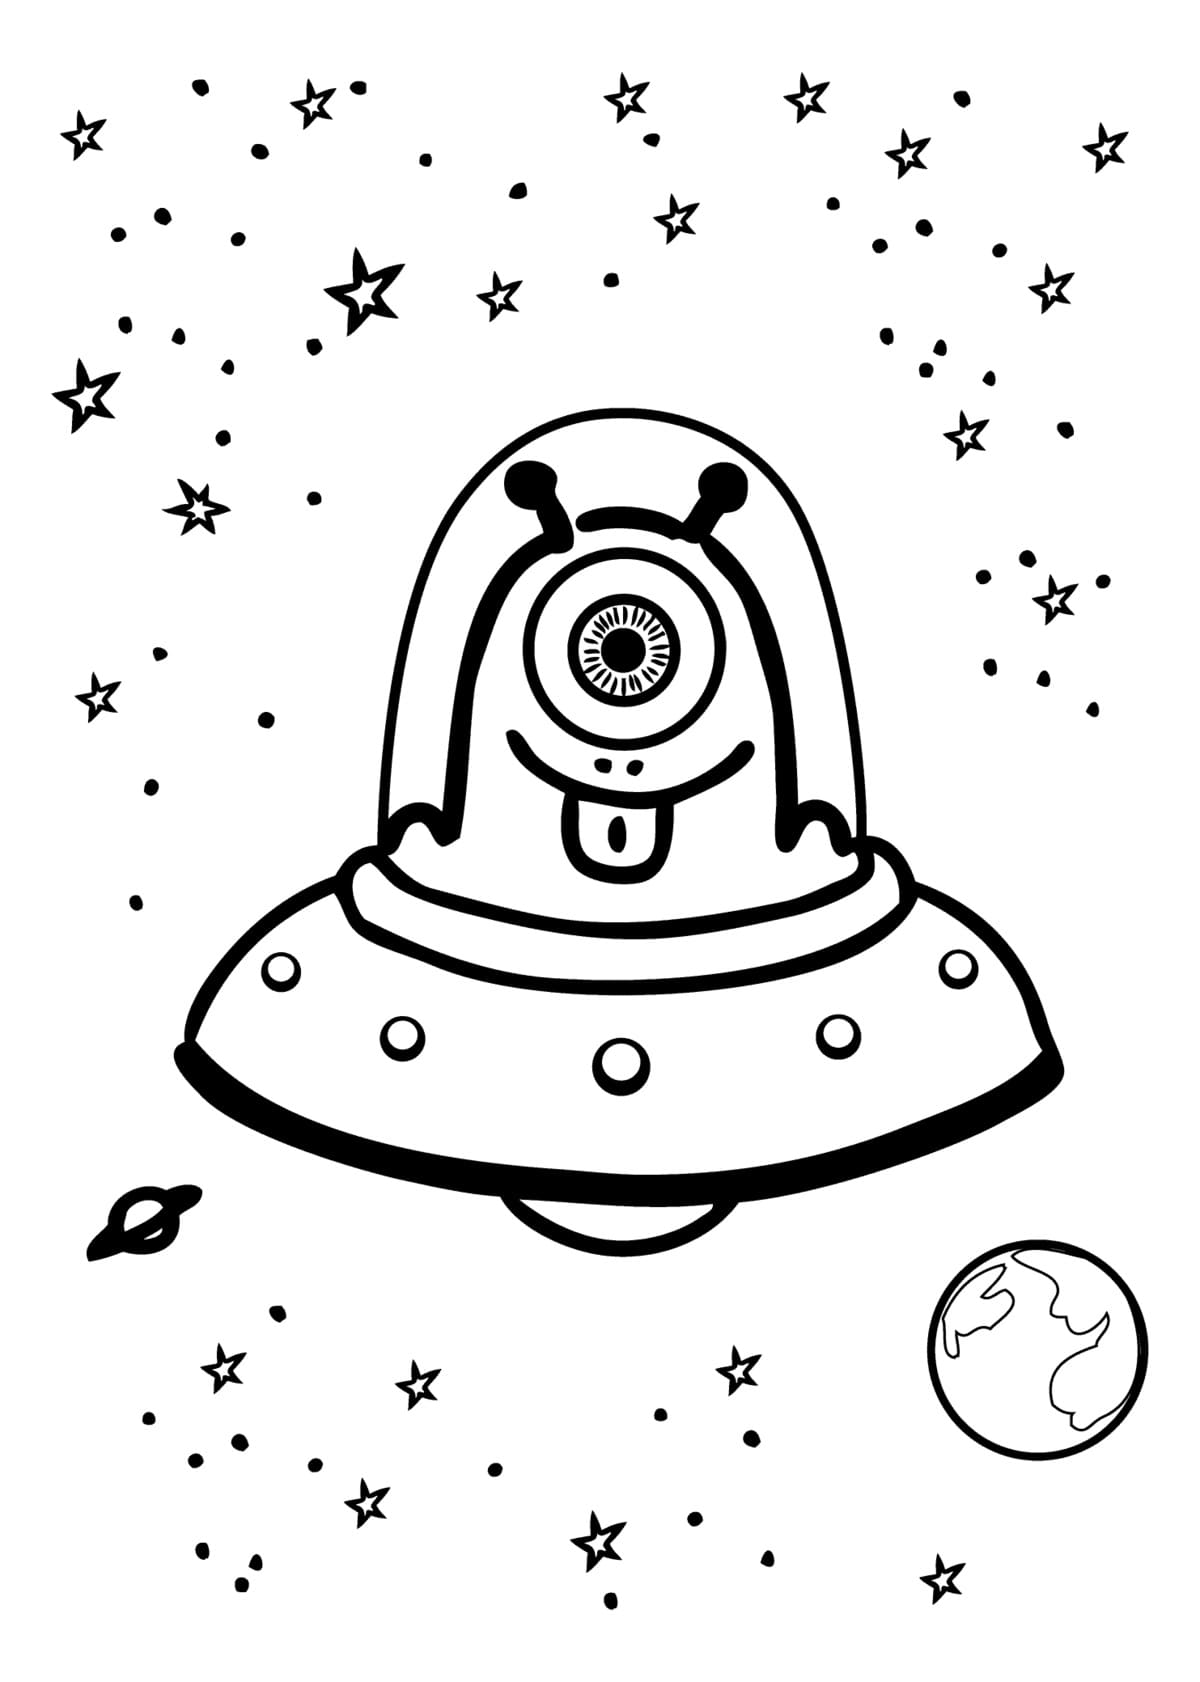 Dibujos de Espacio para Colorear - 110 imágenes para imprimir gratis